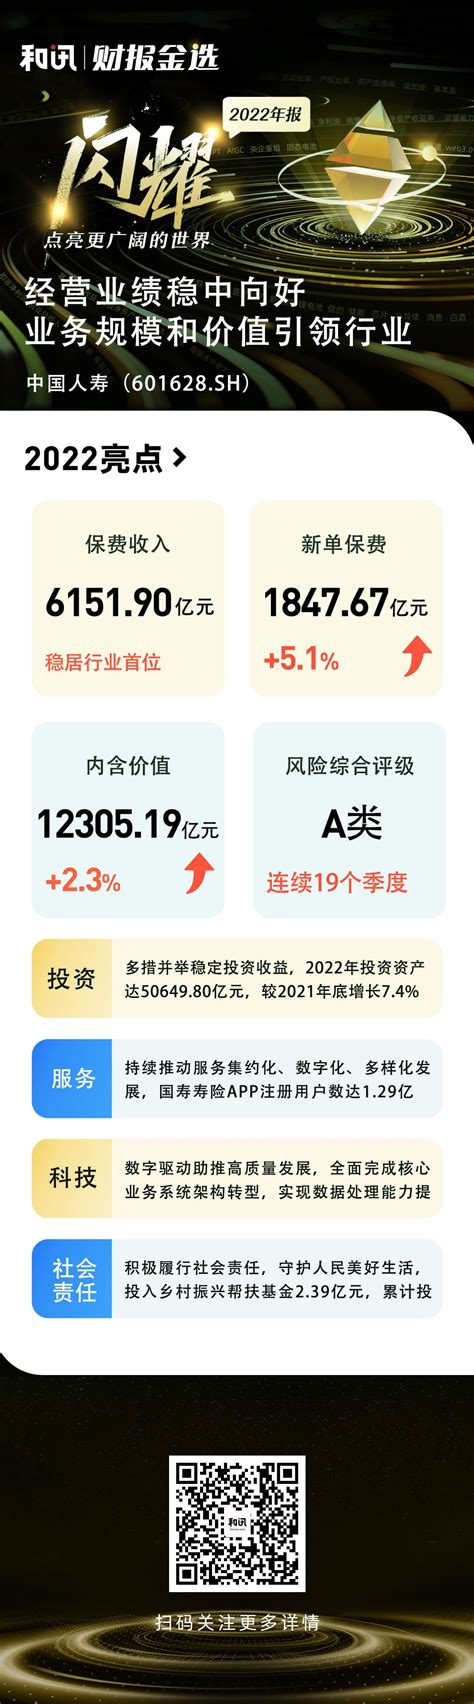 图解2022年中国人寿业绩亮点丨财报金选-保险频道-和讯网